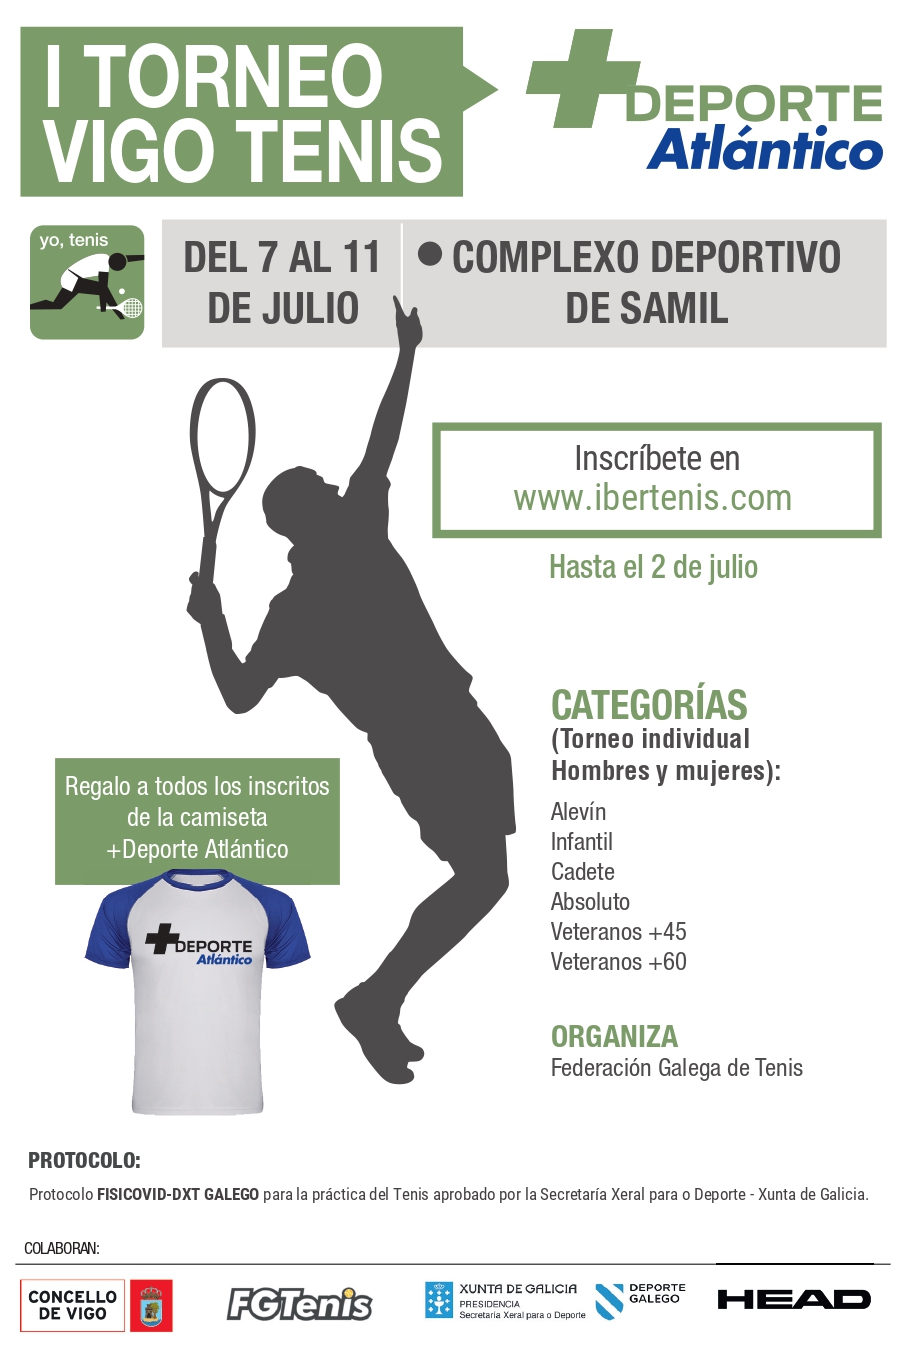 I Torneo de Tenis Atlántico Diario